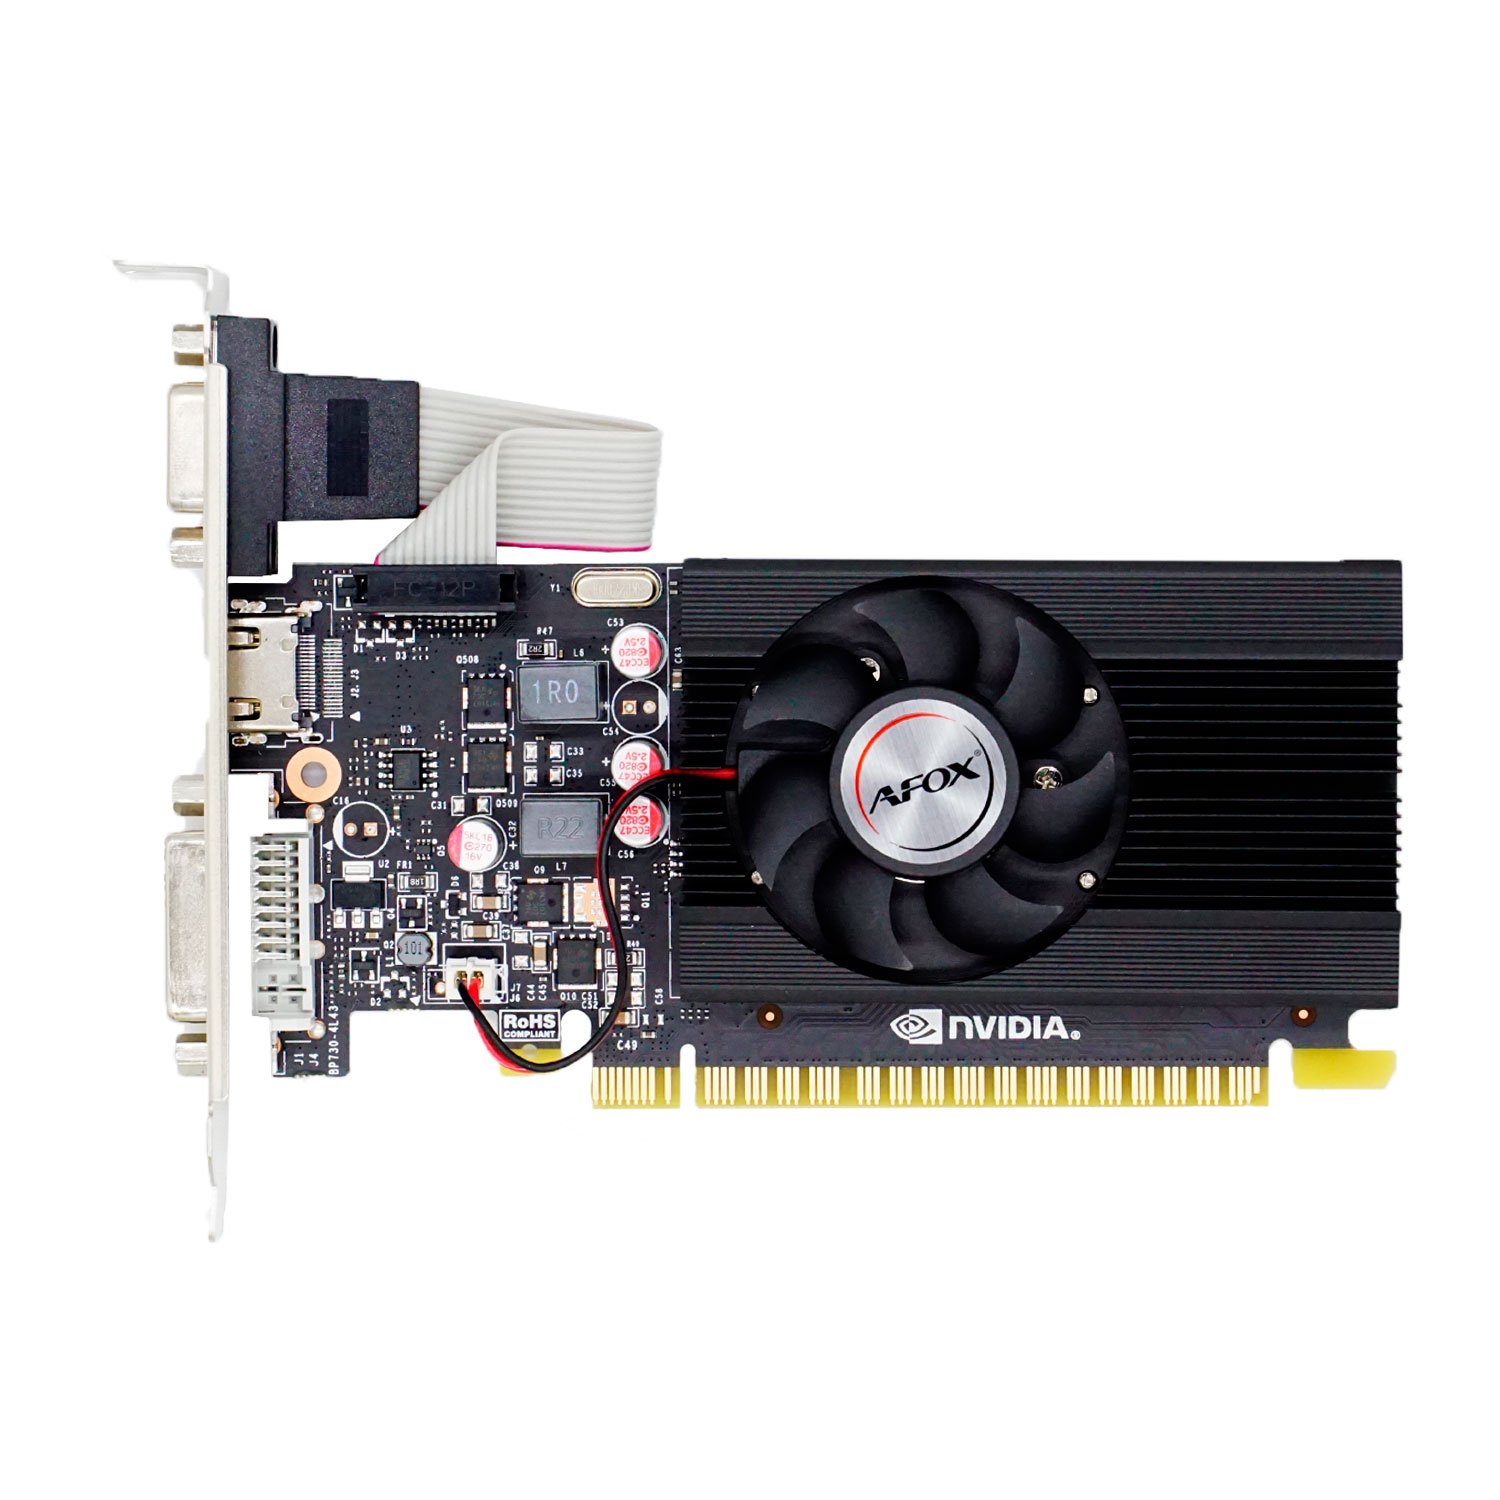 Placa de Video Afox NVIDIA GeForce GT-710 4GB DDR3 - AF710-4096D3L7-V1